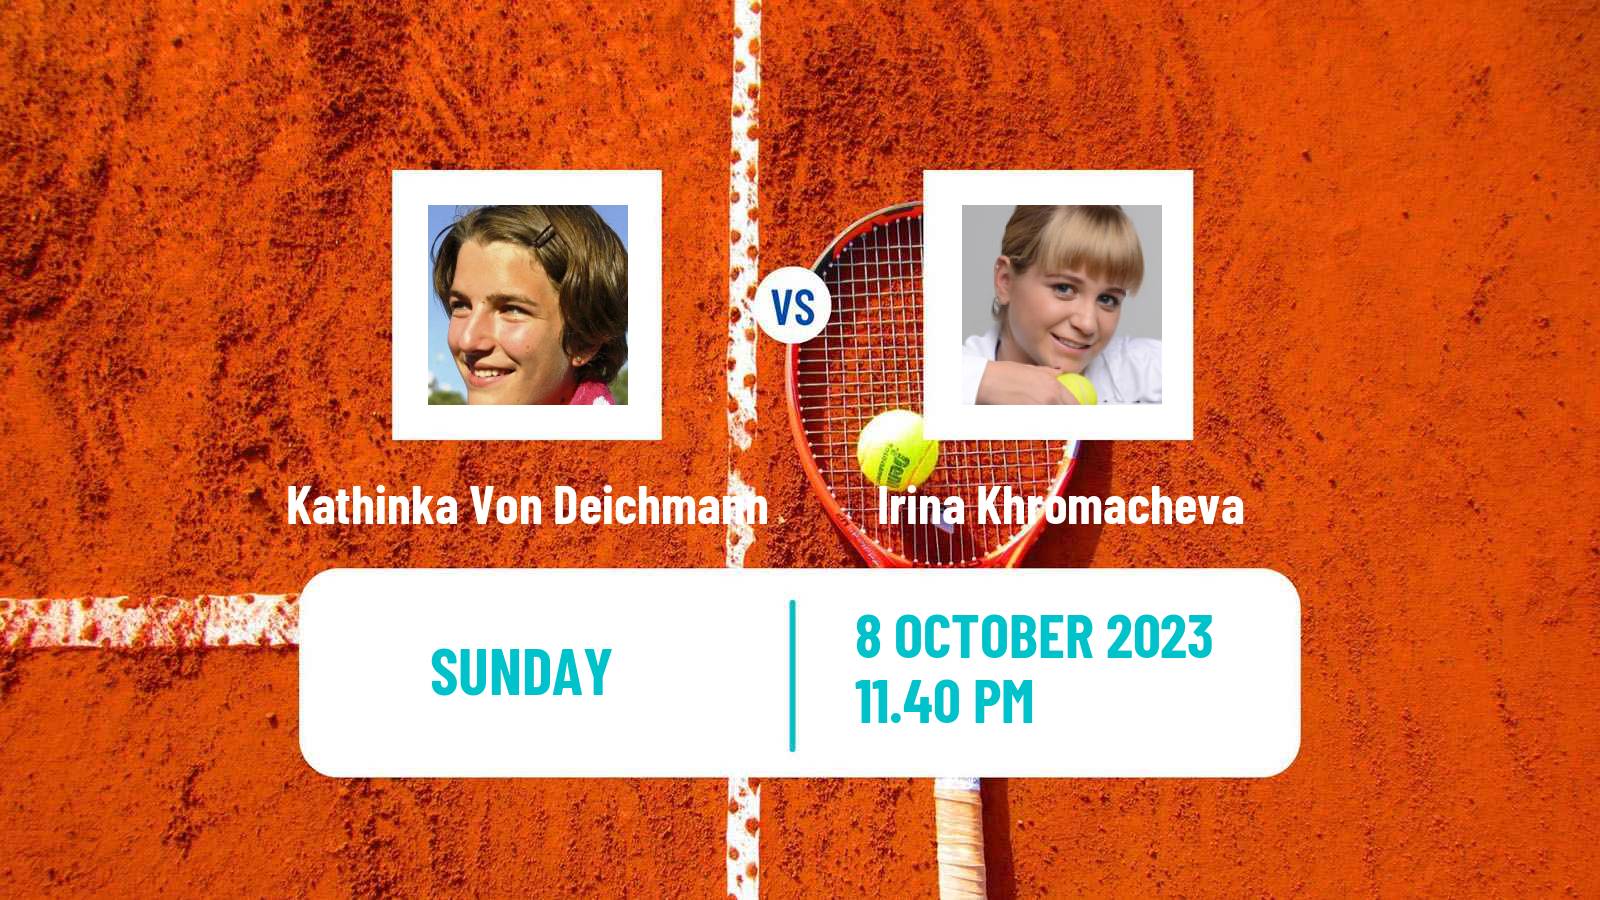 Tennis WTA Seoul Kathinka Von Deichmann - Irina Khromacheva